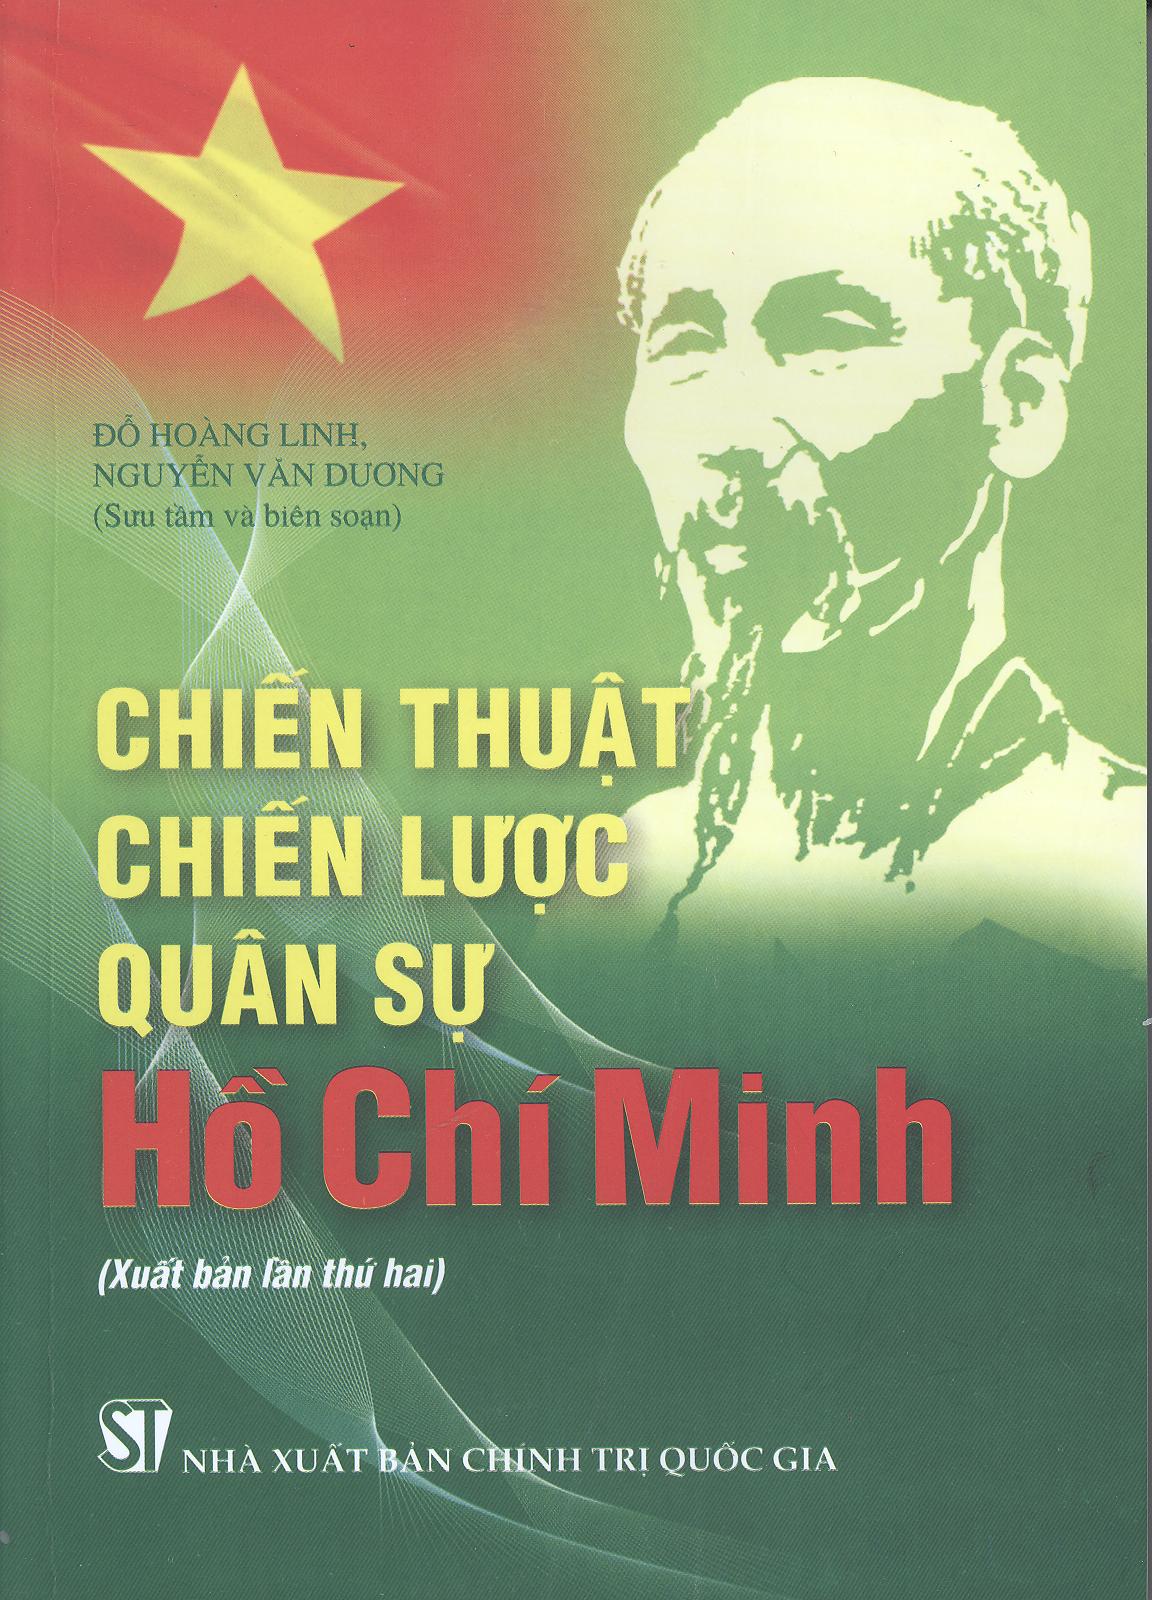 Chiến thuật, chiến lược quân sự Hồ Chí Minh